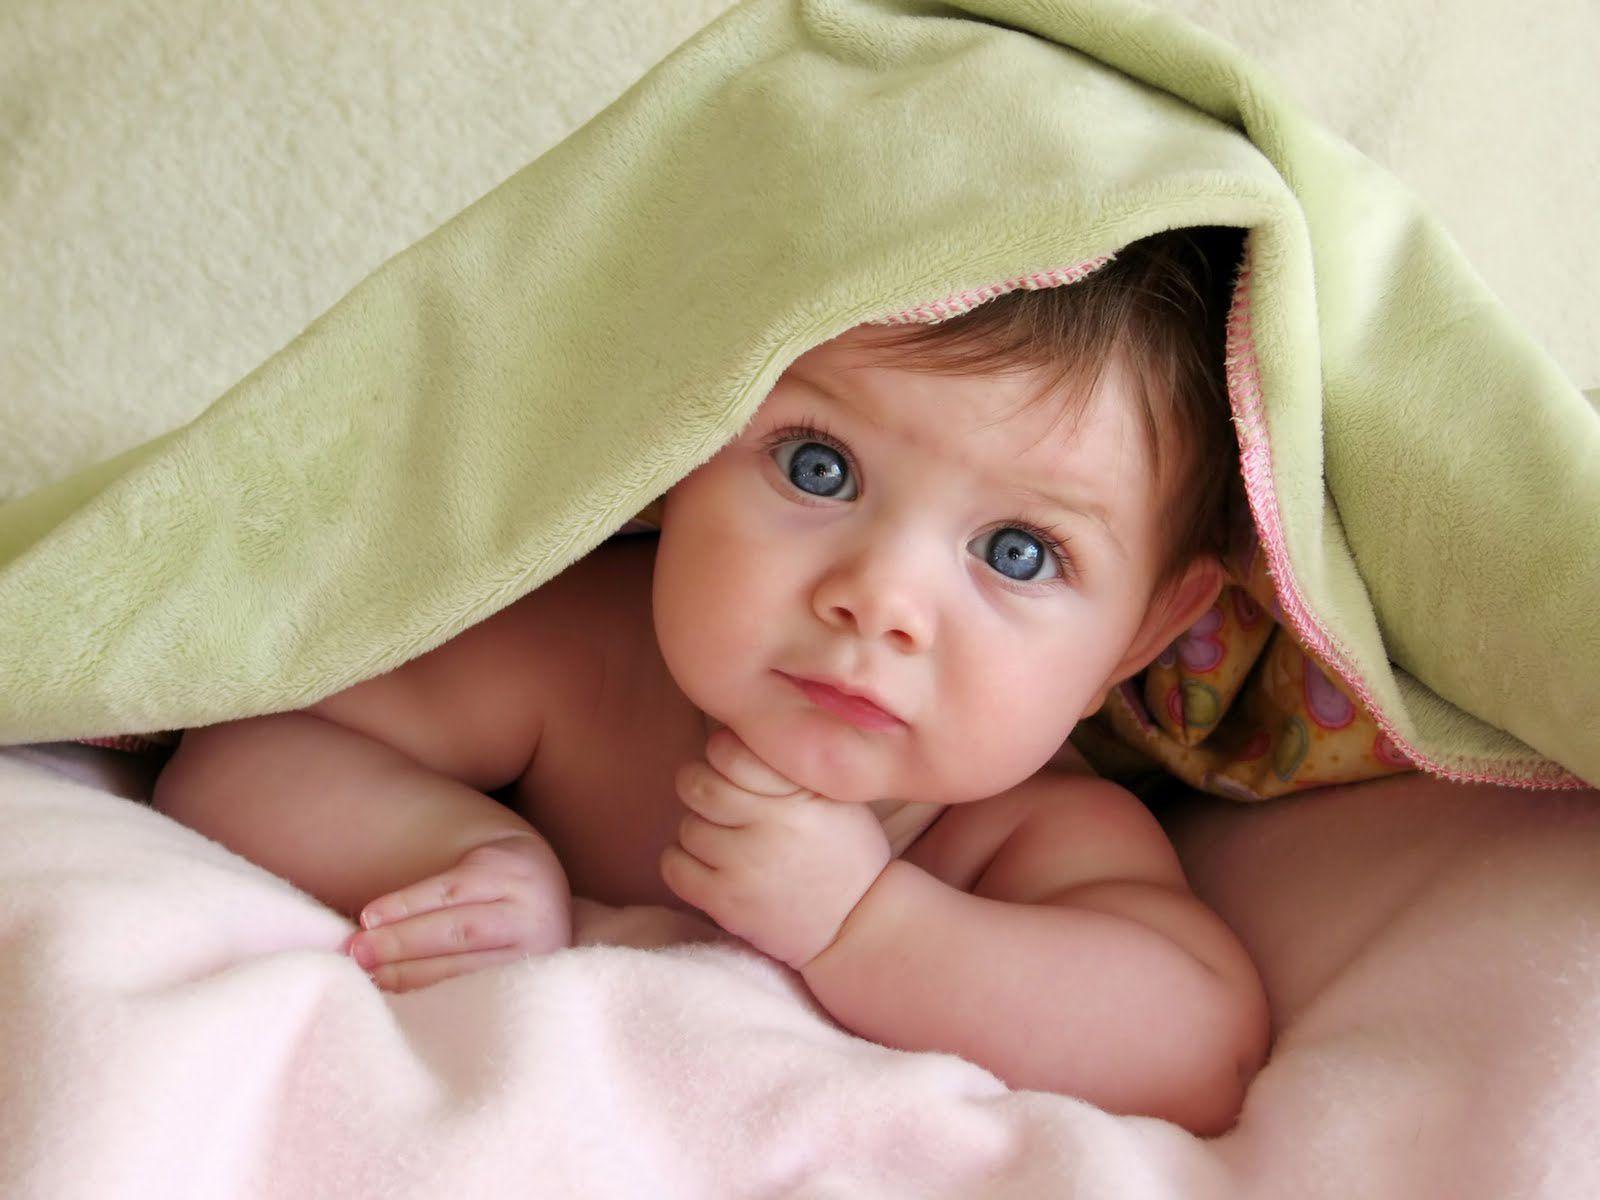 wallpaper: Baby Under Blanket